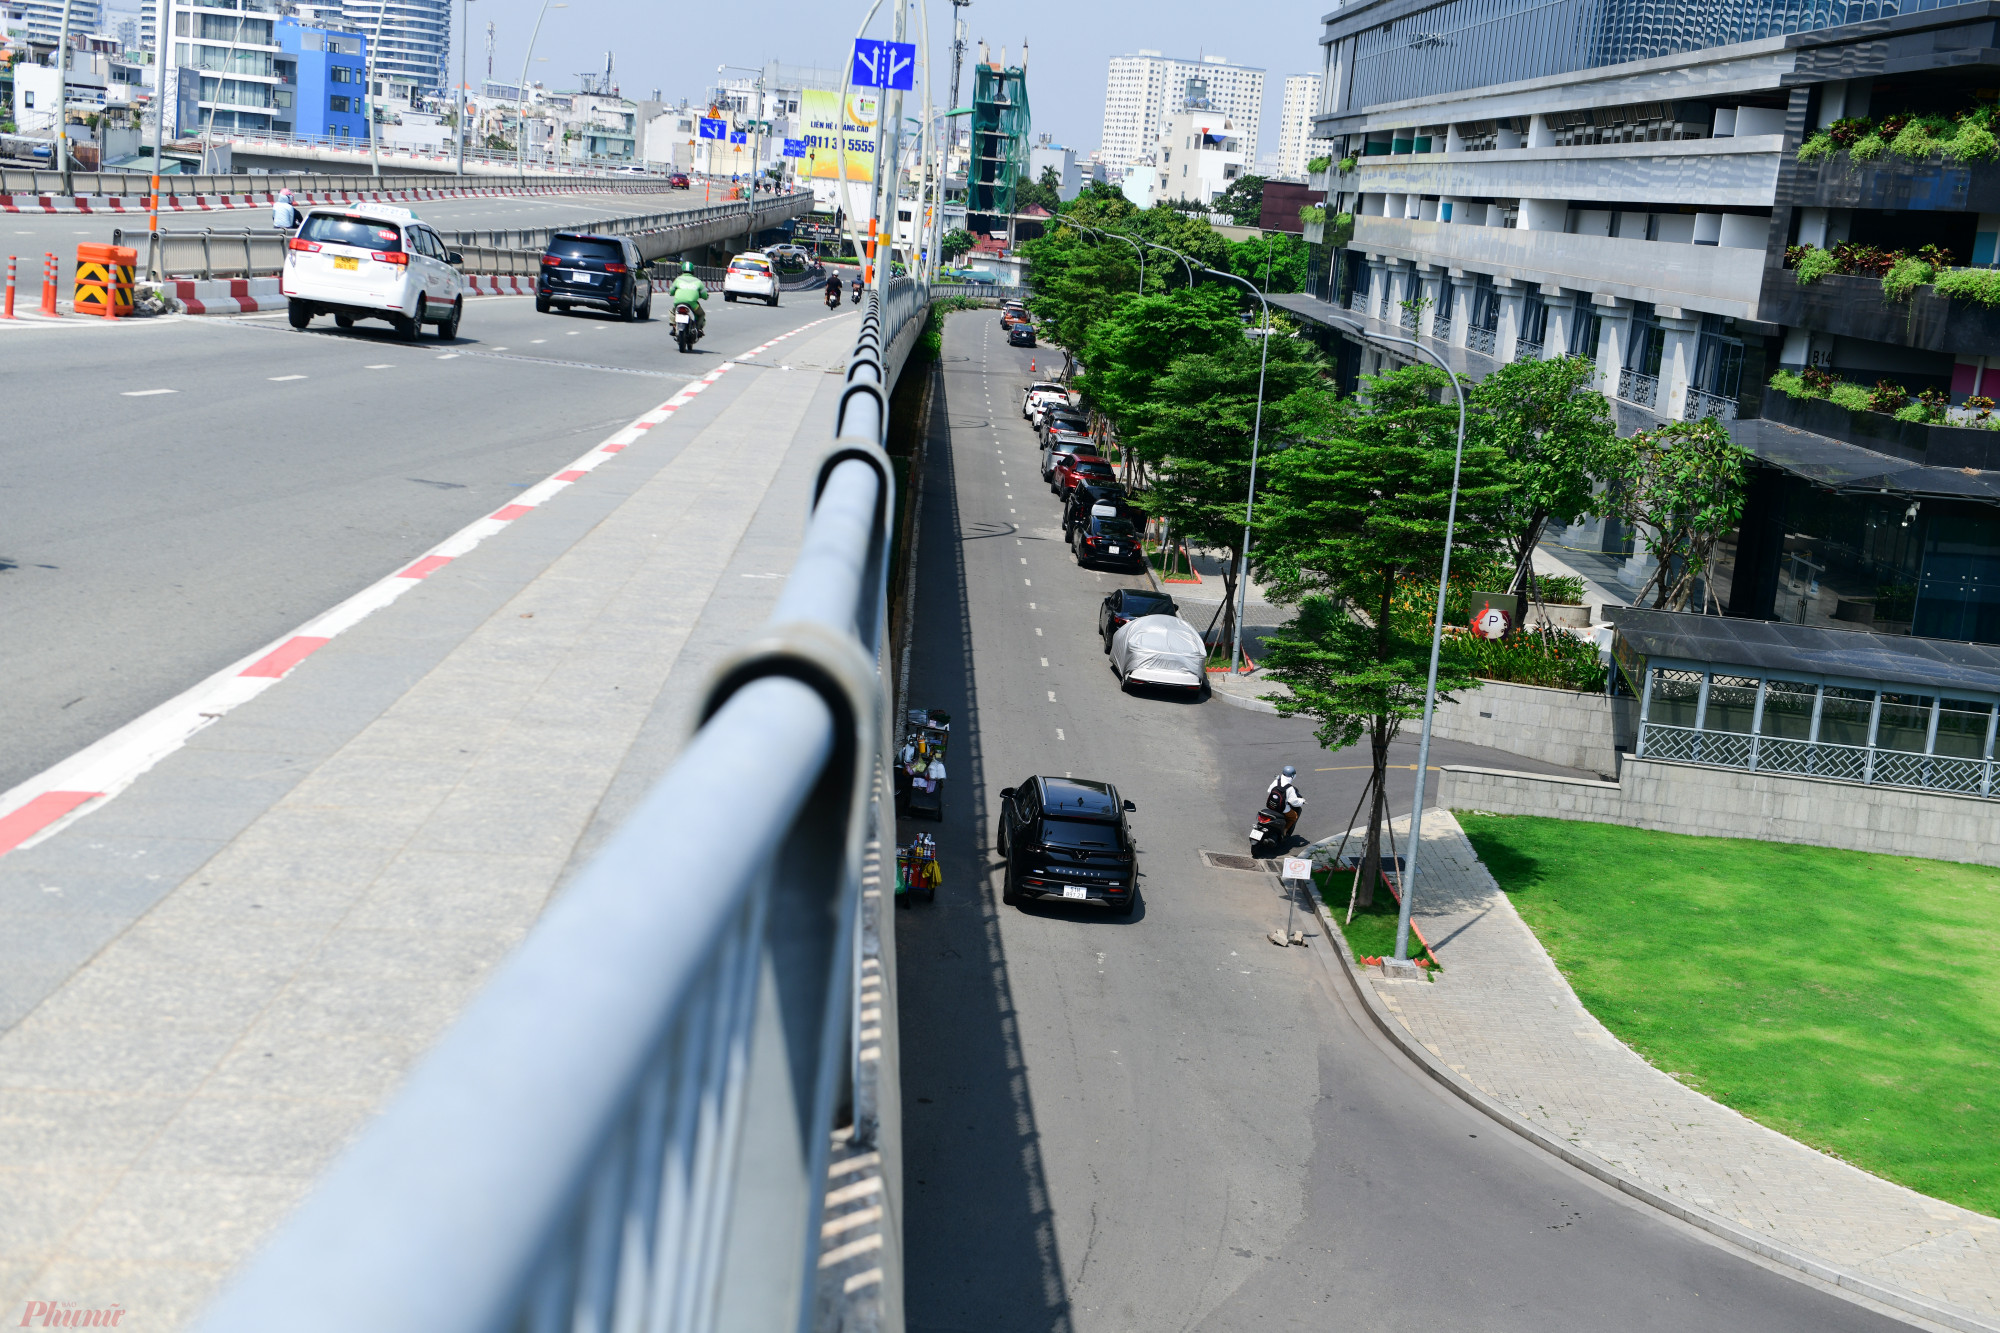 đường Điện Biên Phủ qua đường nội bộ của Vinhomes rồi nối qua đường nội bộ của Saigon Pearl ra thẳng cầu Thủ Thiêm 1 (dài khoảng 1,5km).